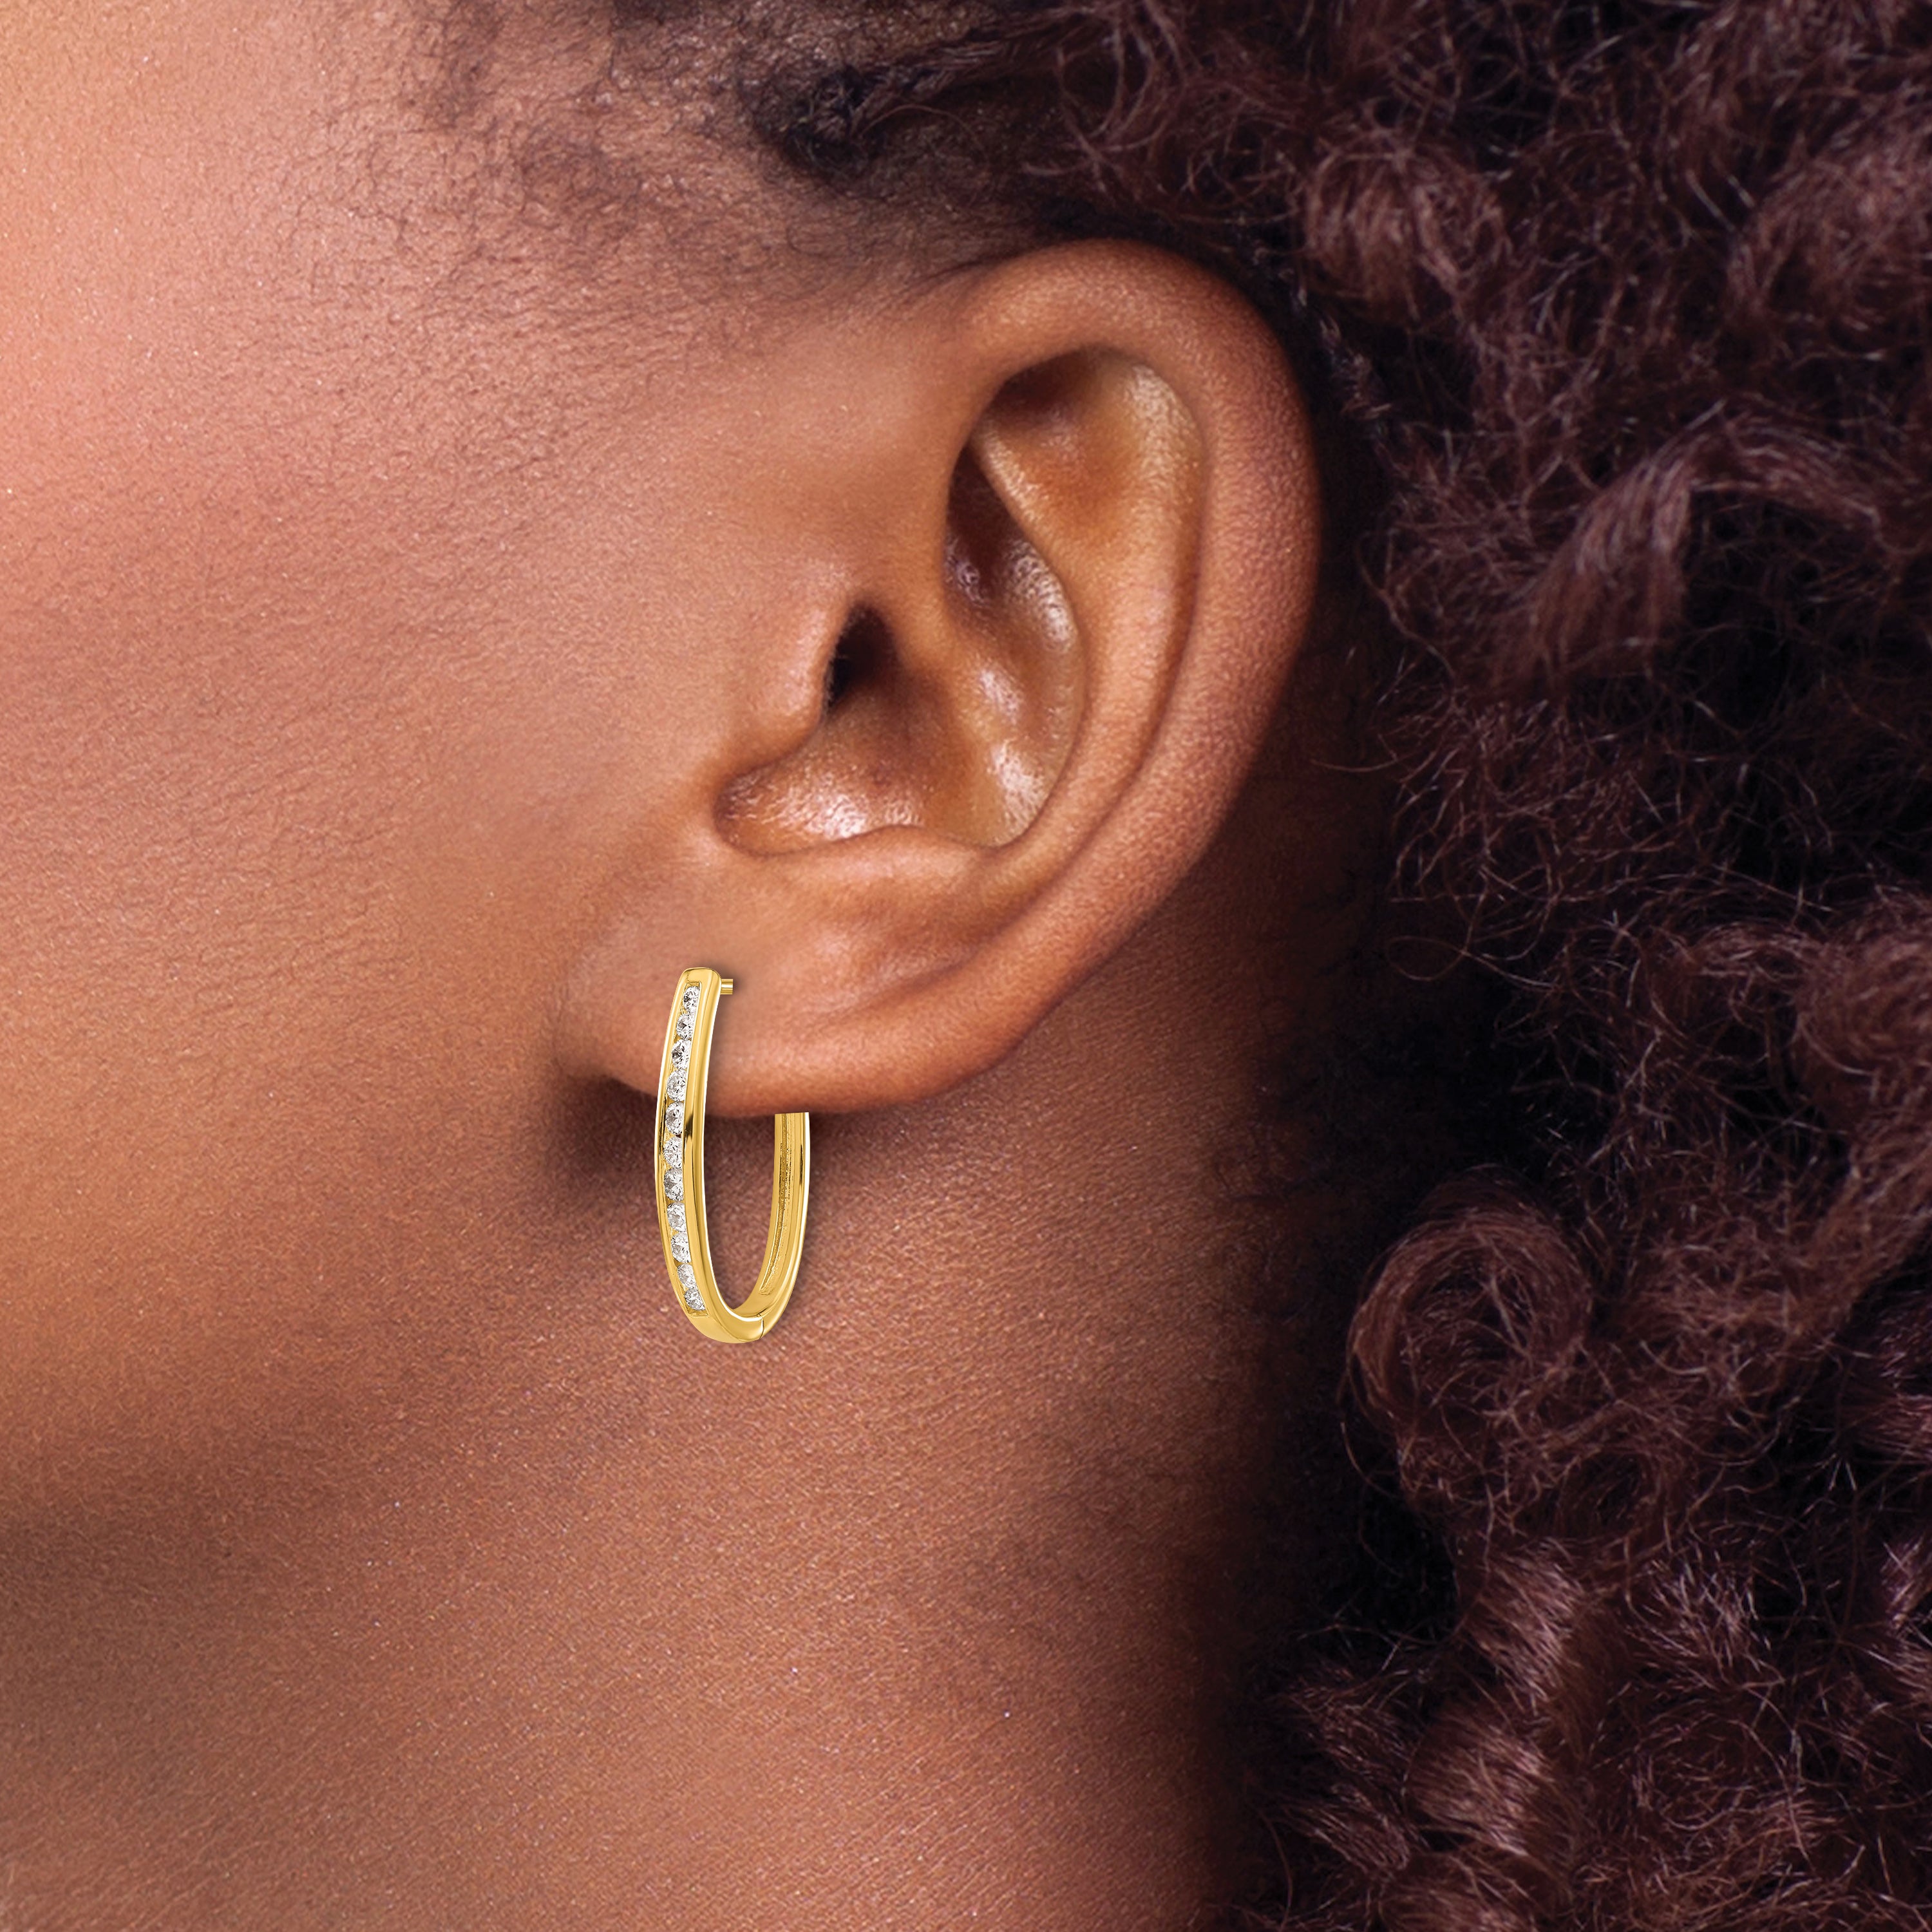 10k Diamond Oval Hinged Hoop Earrings